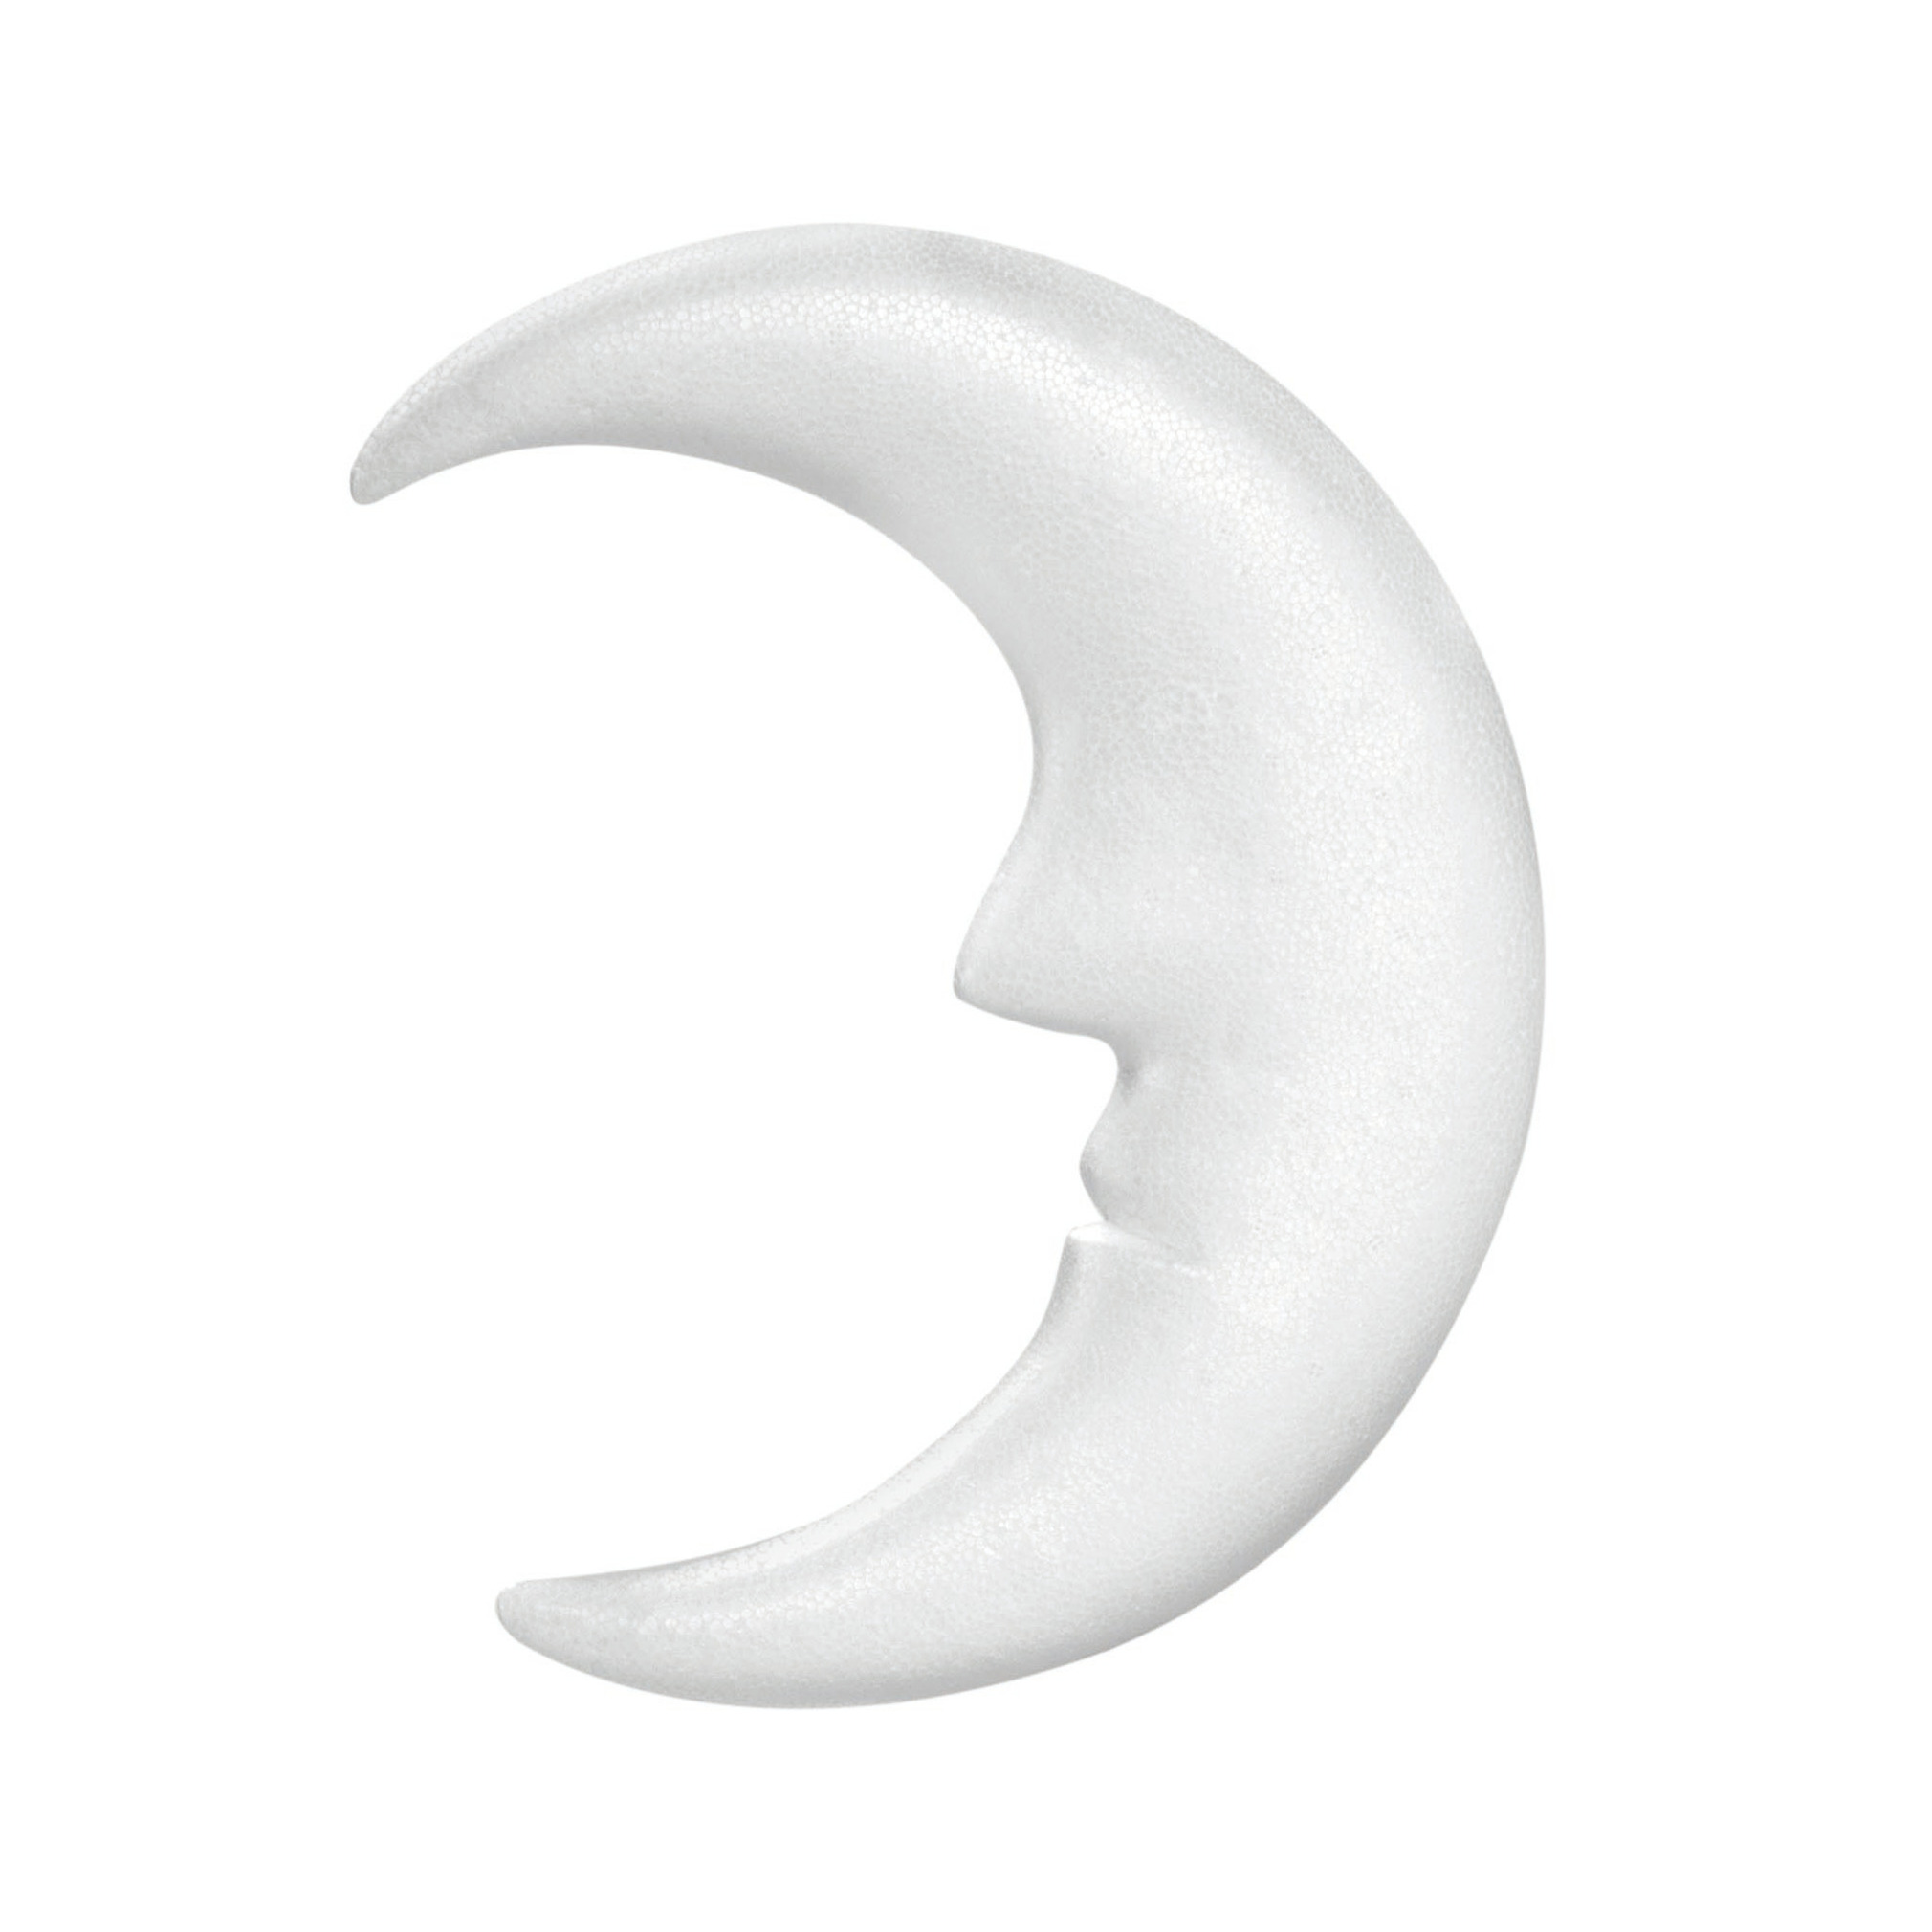 Piepschuim hobby knutselen vormen-figuren maan van 23 cm